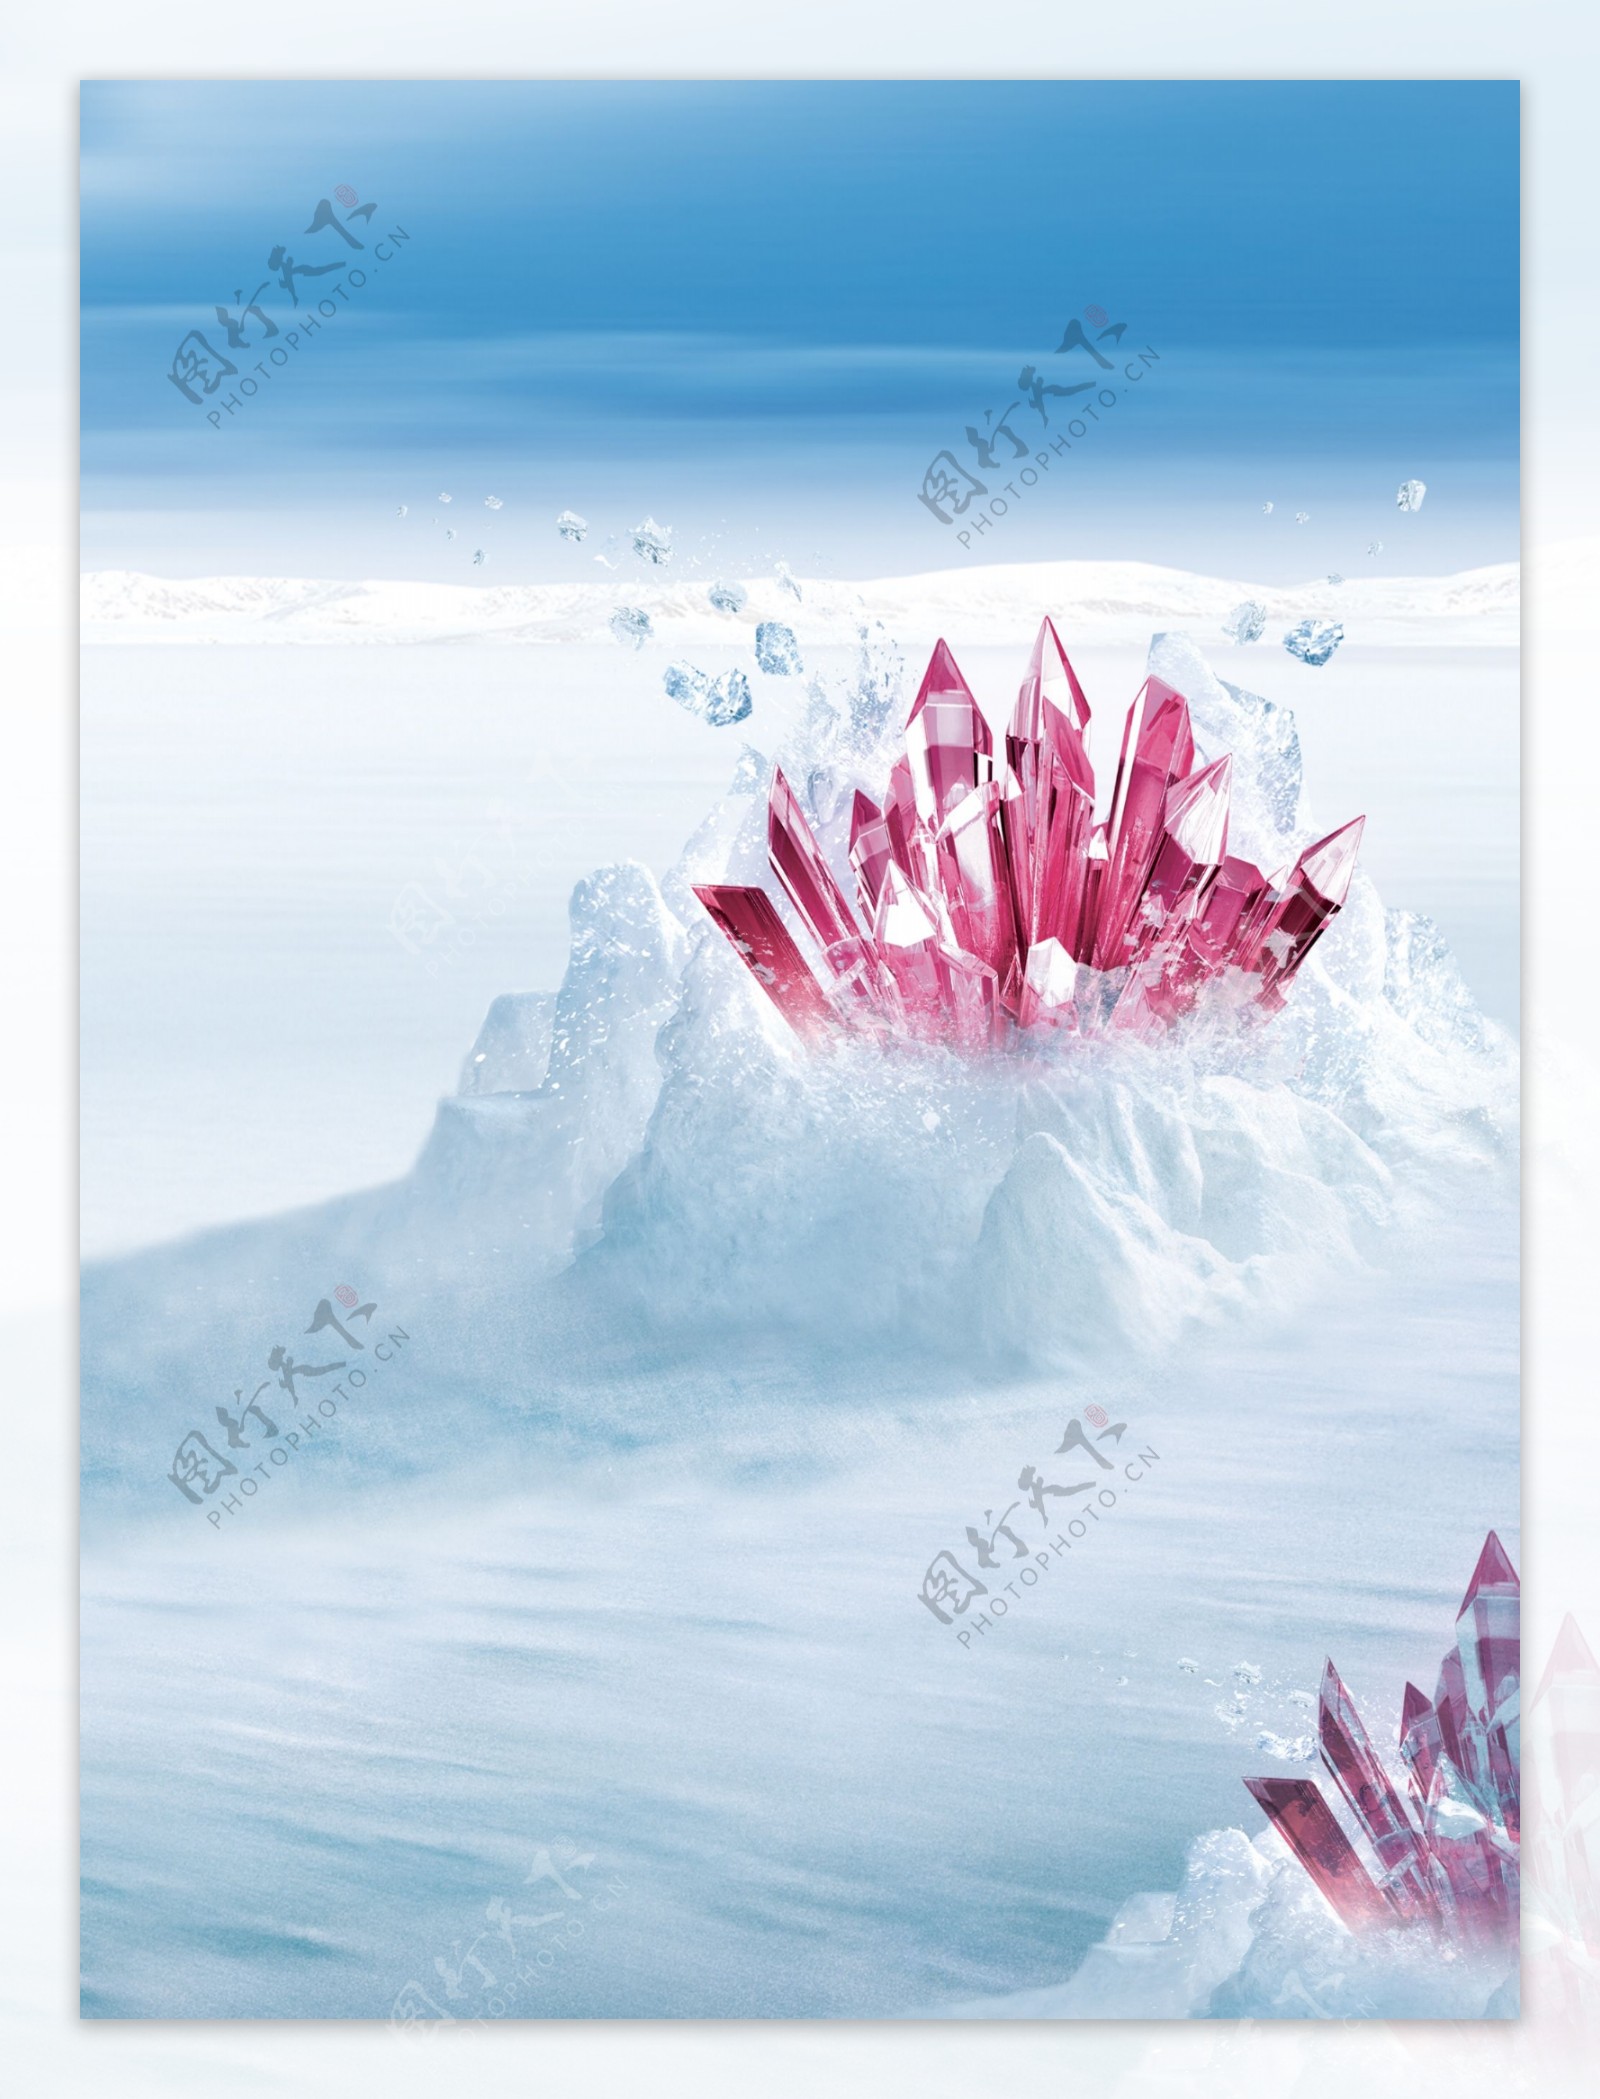 雪域冰晶图片